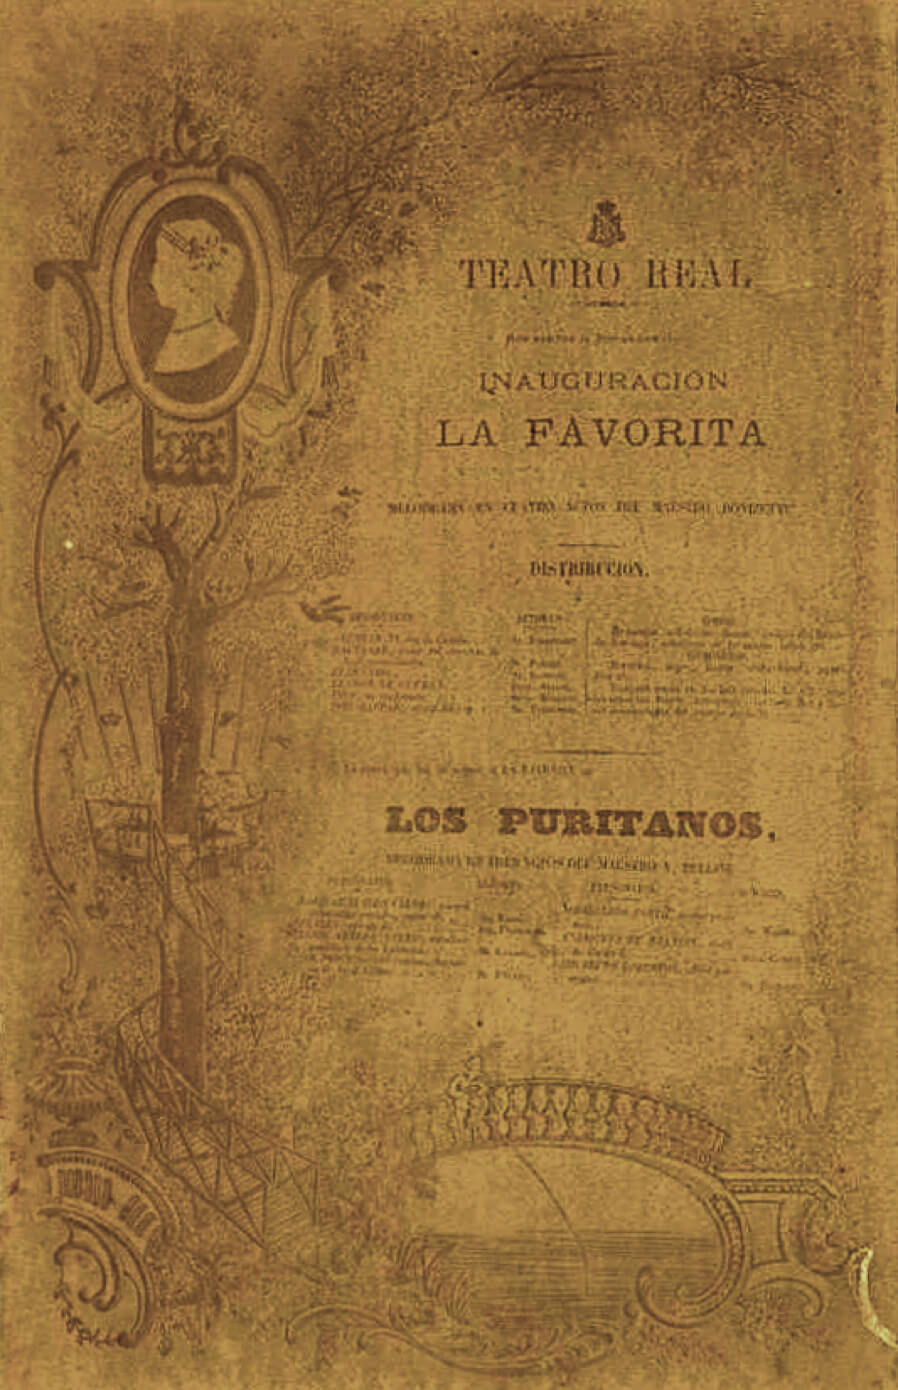 Cartel de ‘La Favorita’ 1850 - MAE. Institut del Teatre